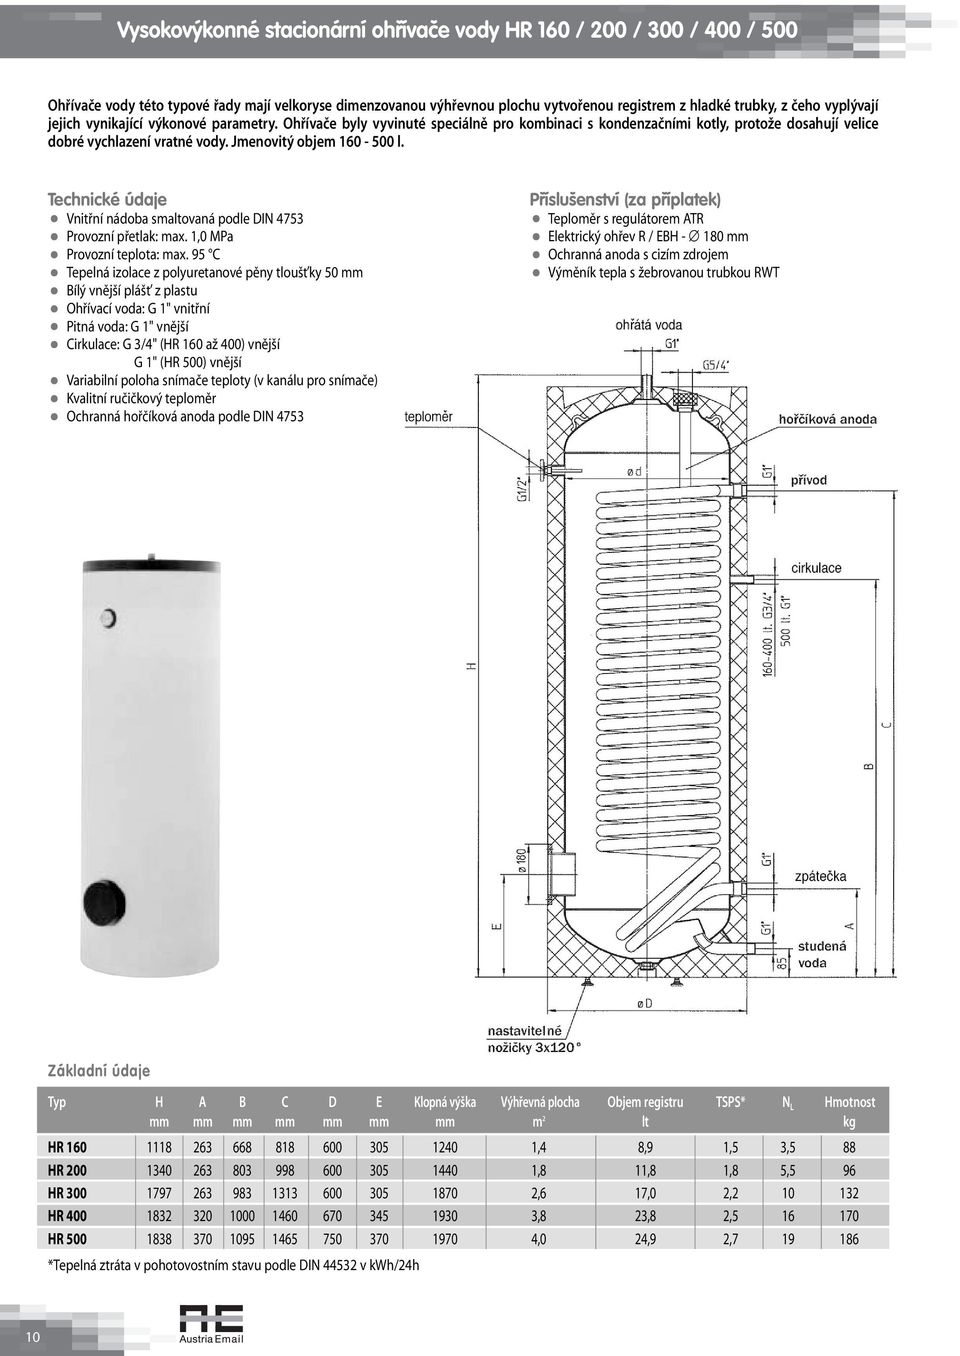 Technické údaje Vnitřní nádoba smaltovaná podle DIN 4753 Provozní přetlak: max 1,0 MPa Provozní teplota: max 95 C Tepelná izolace z polyuretanové pěny tloušťky 50 mm Bílý vnější plášť z plastu